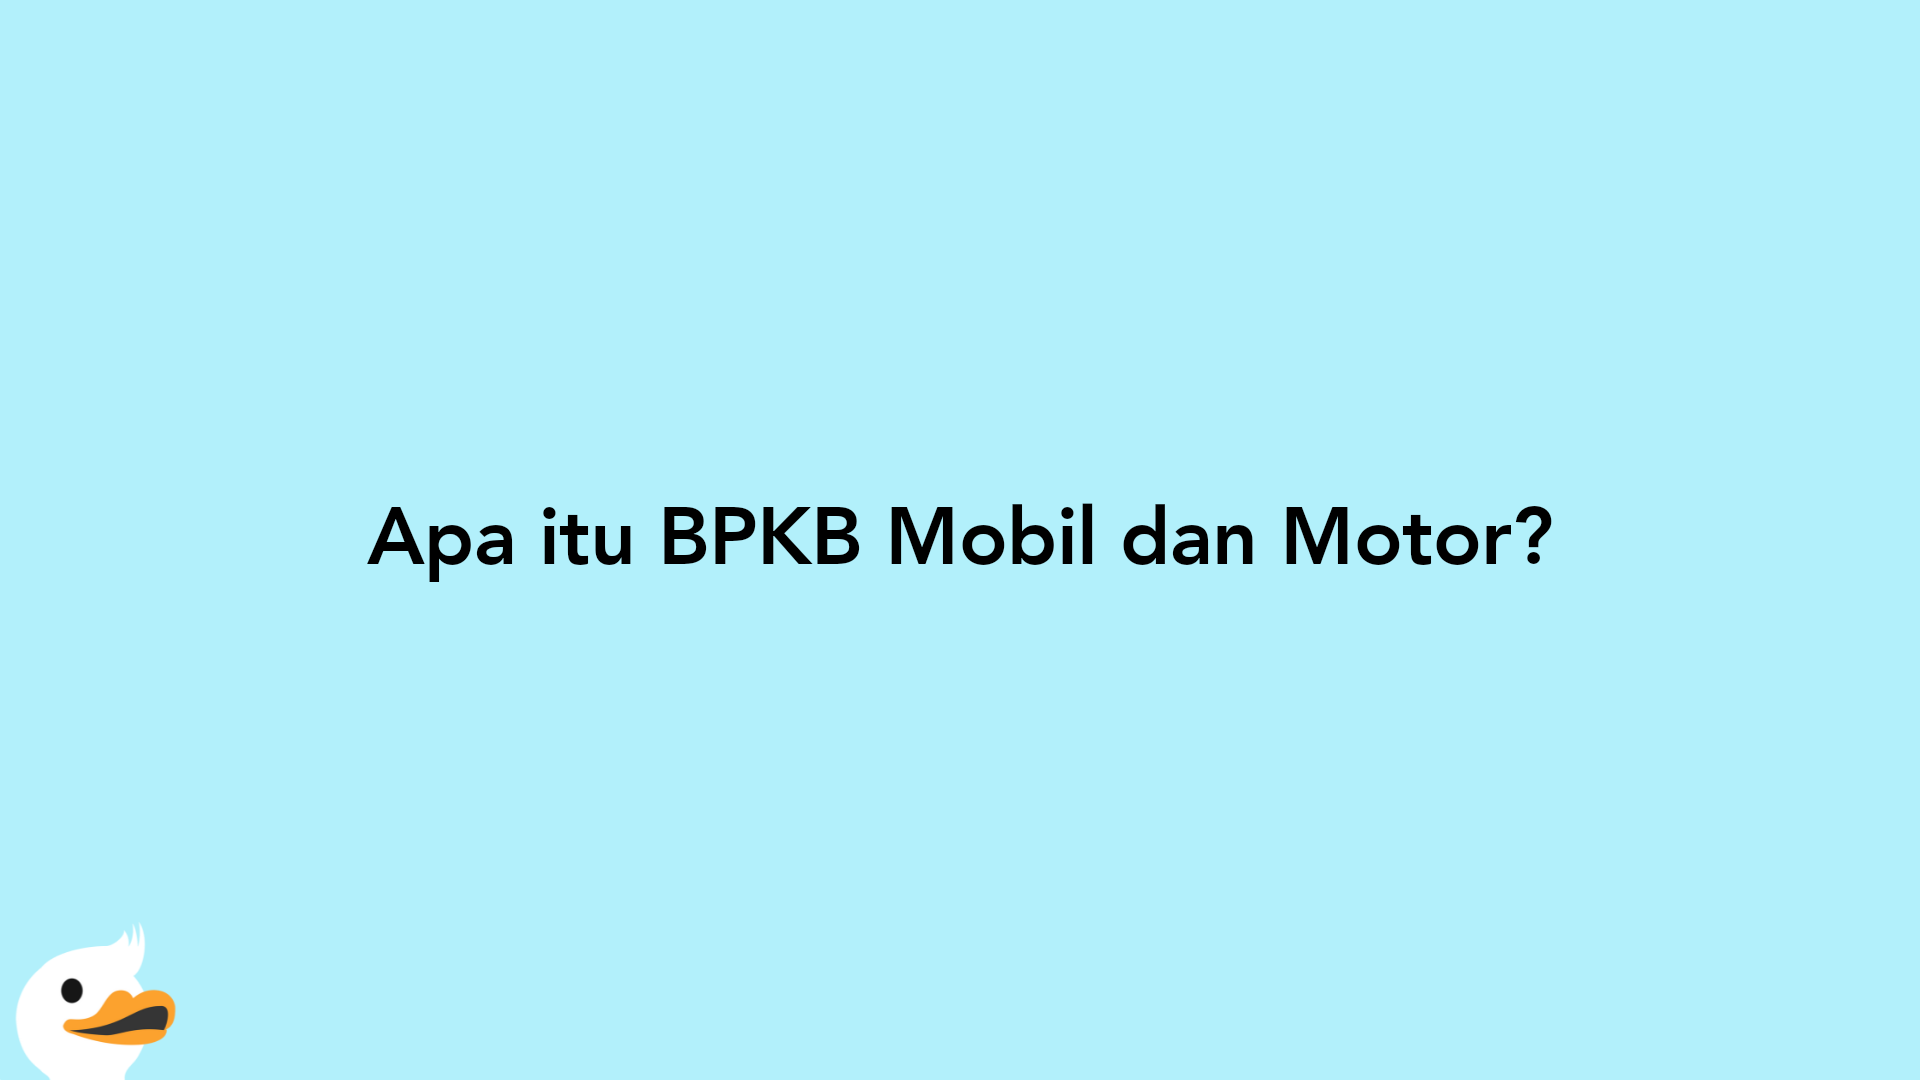 Apa itu BPKB Mobil dan Motor?